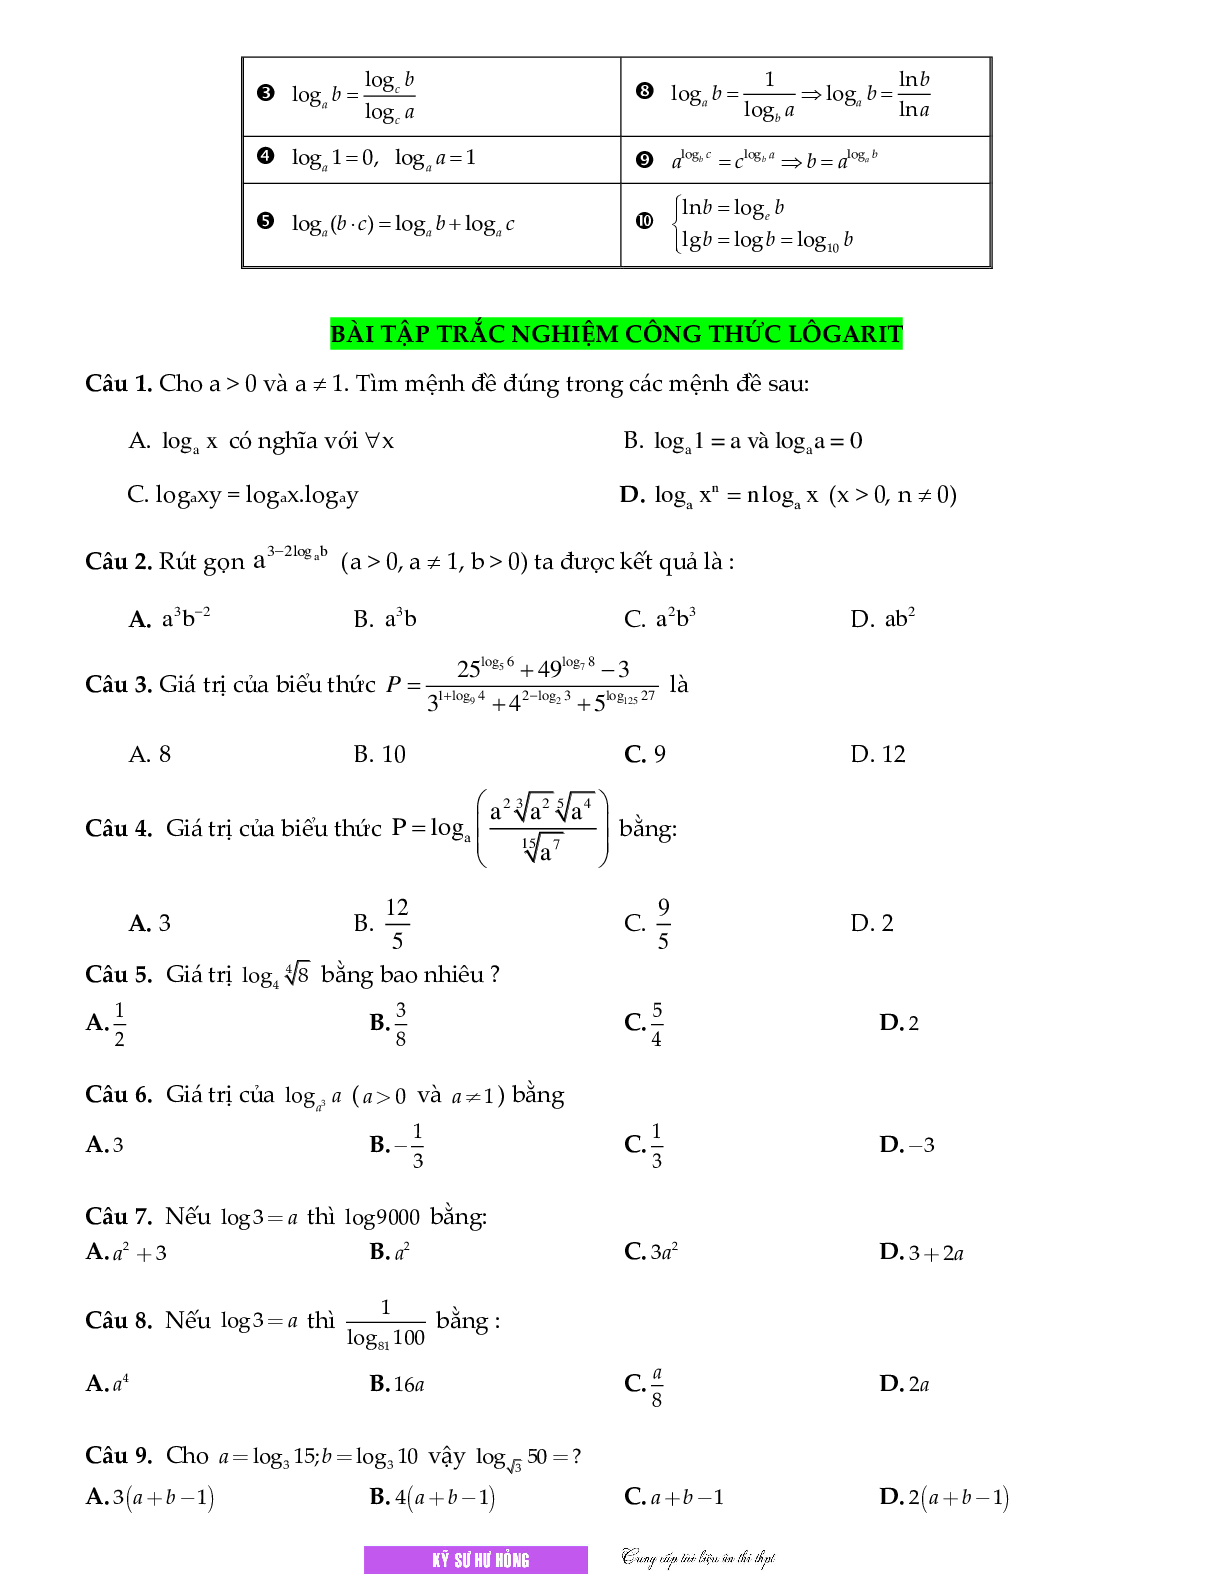 Chuyên đề Mũ - logarit môn Toán lớp 12 (trang 6)